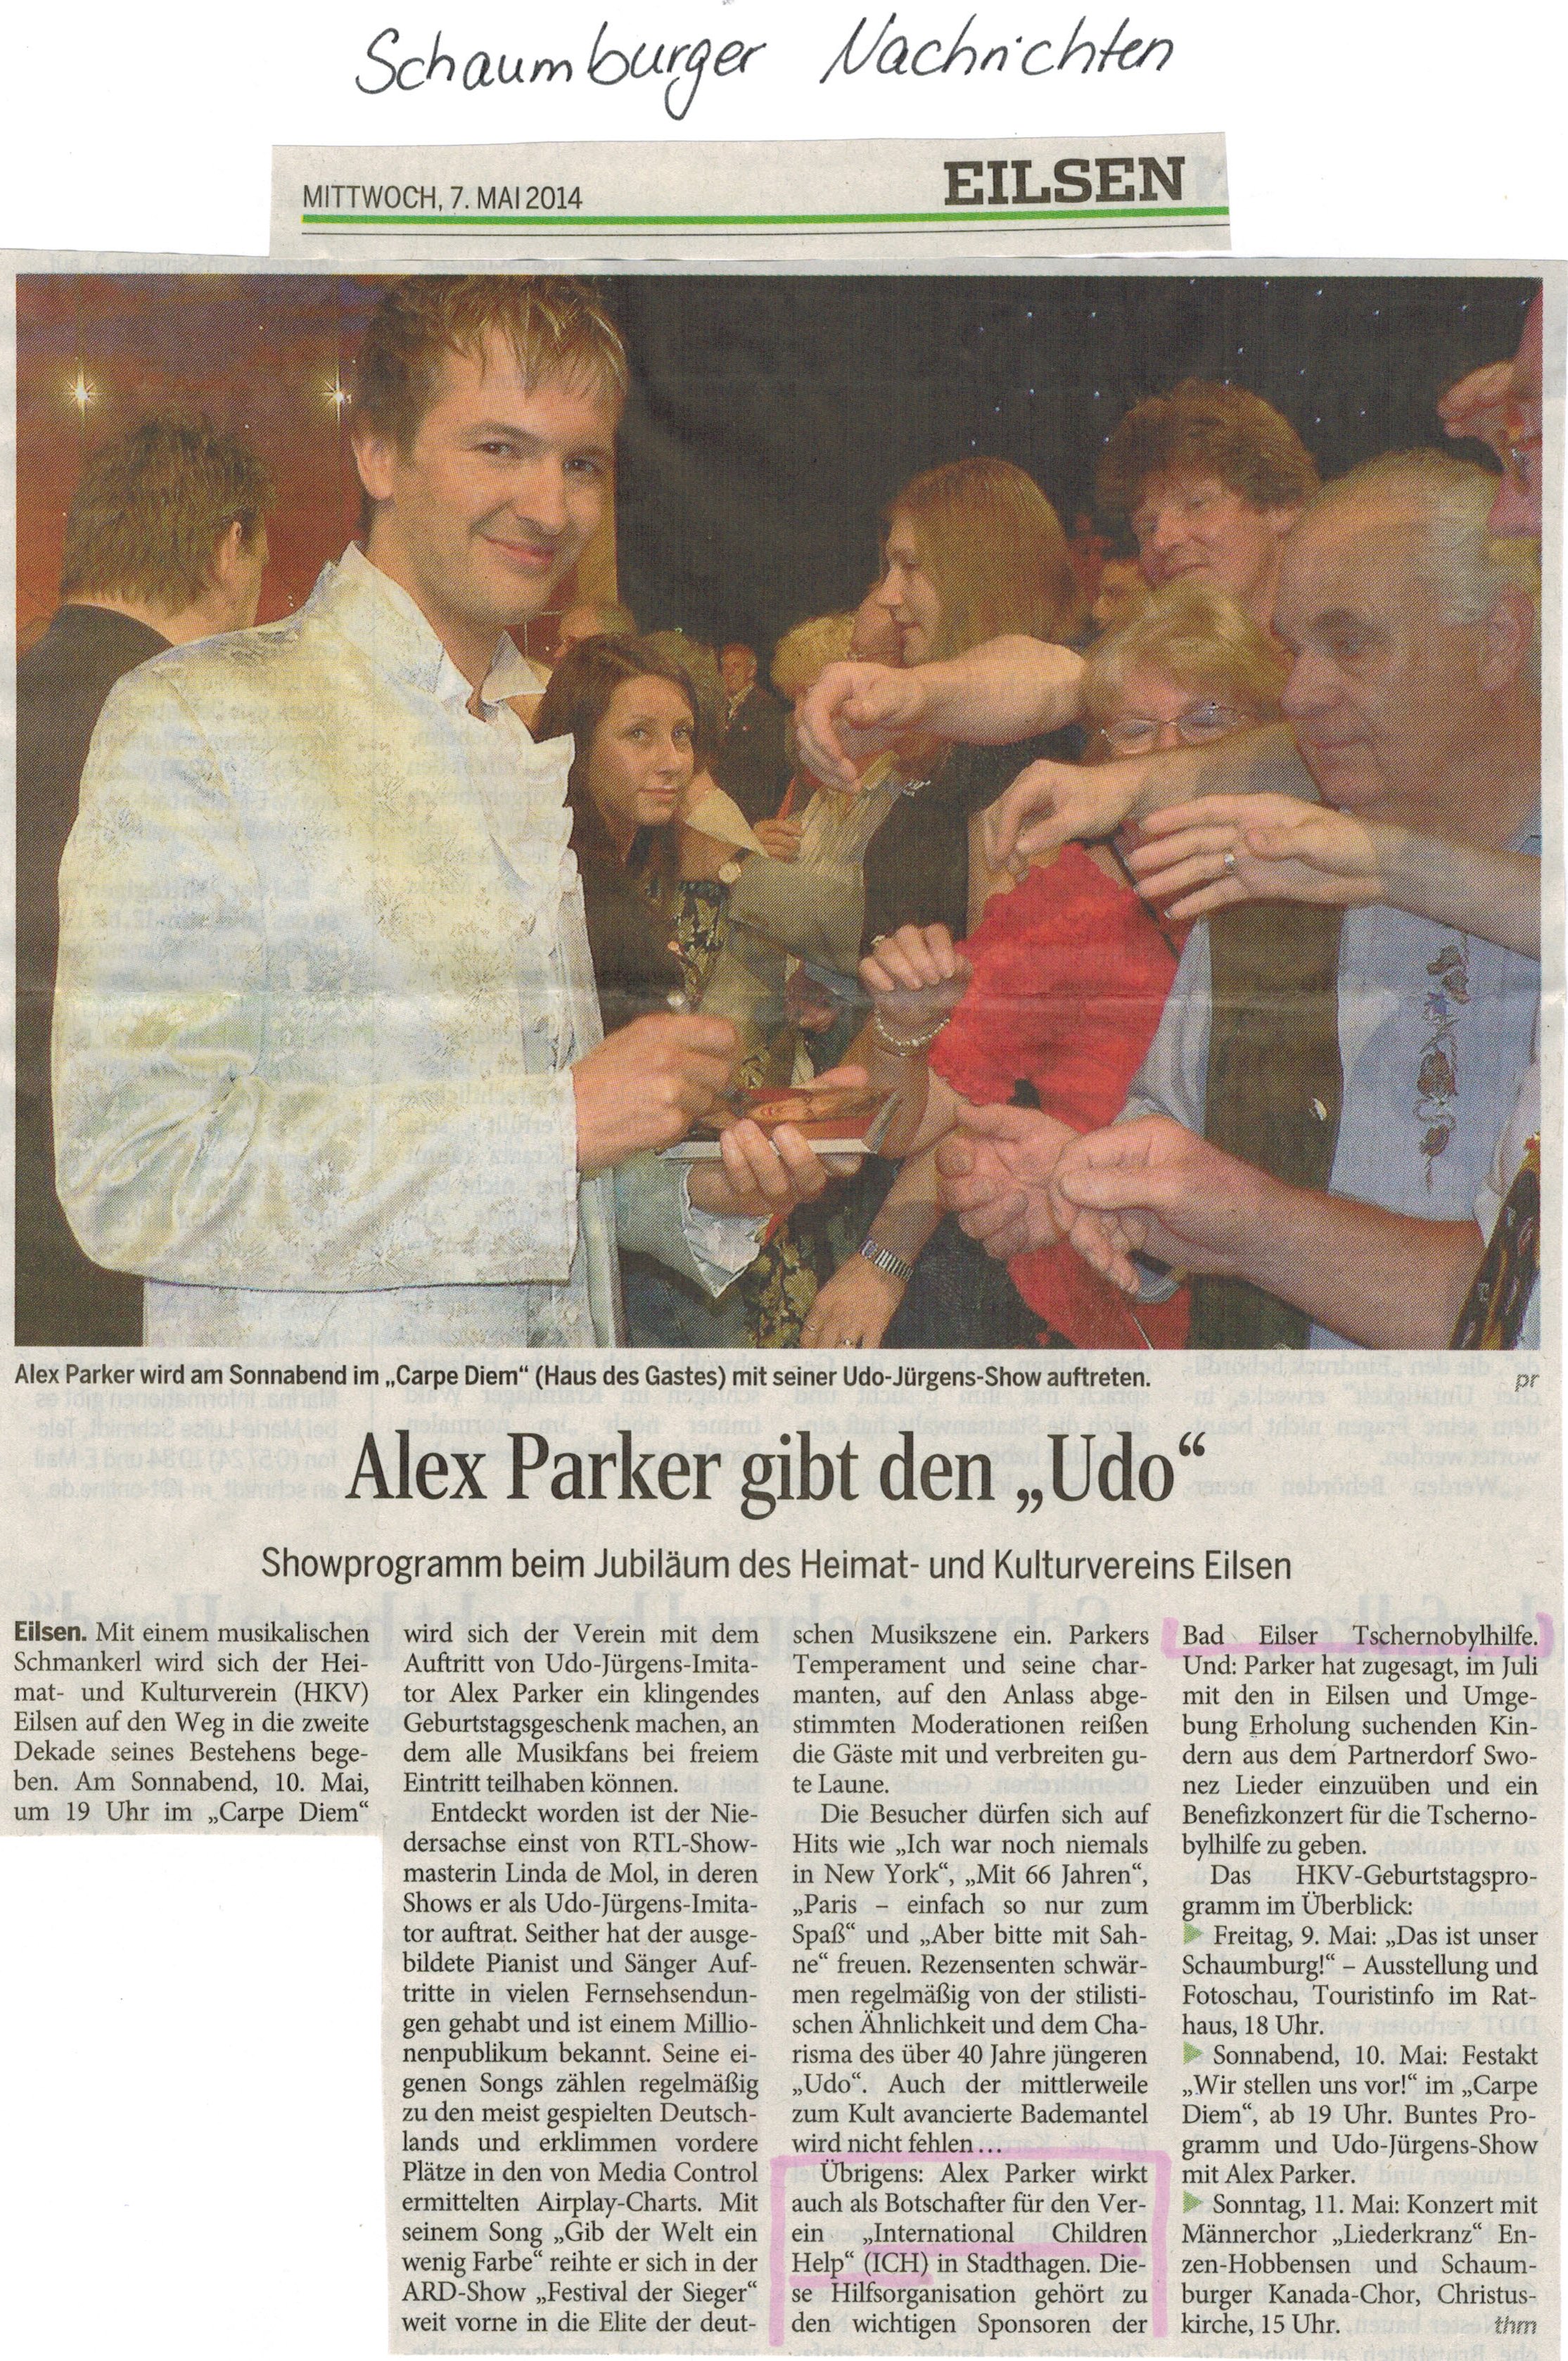 2014-05-12 Alex Parker gibt den Udo